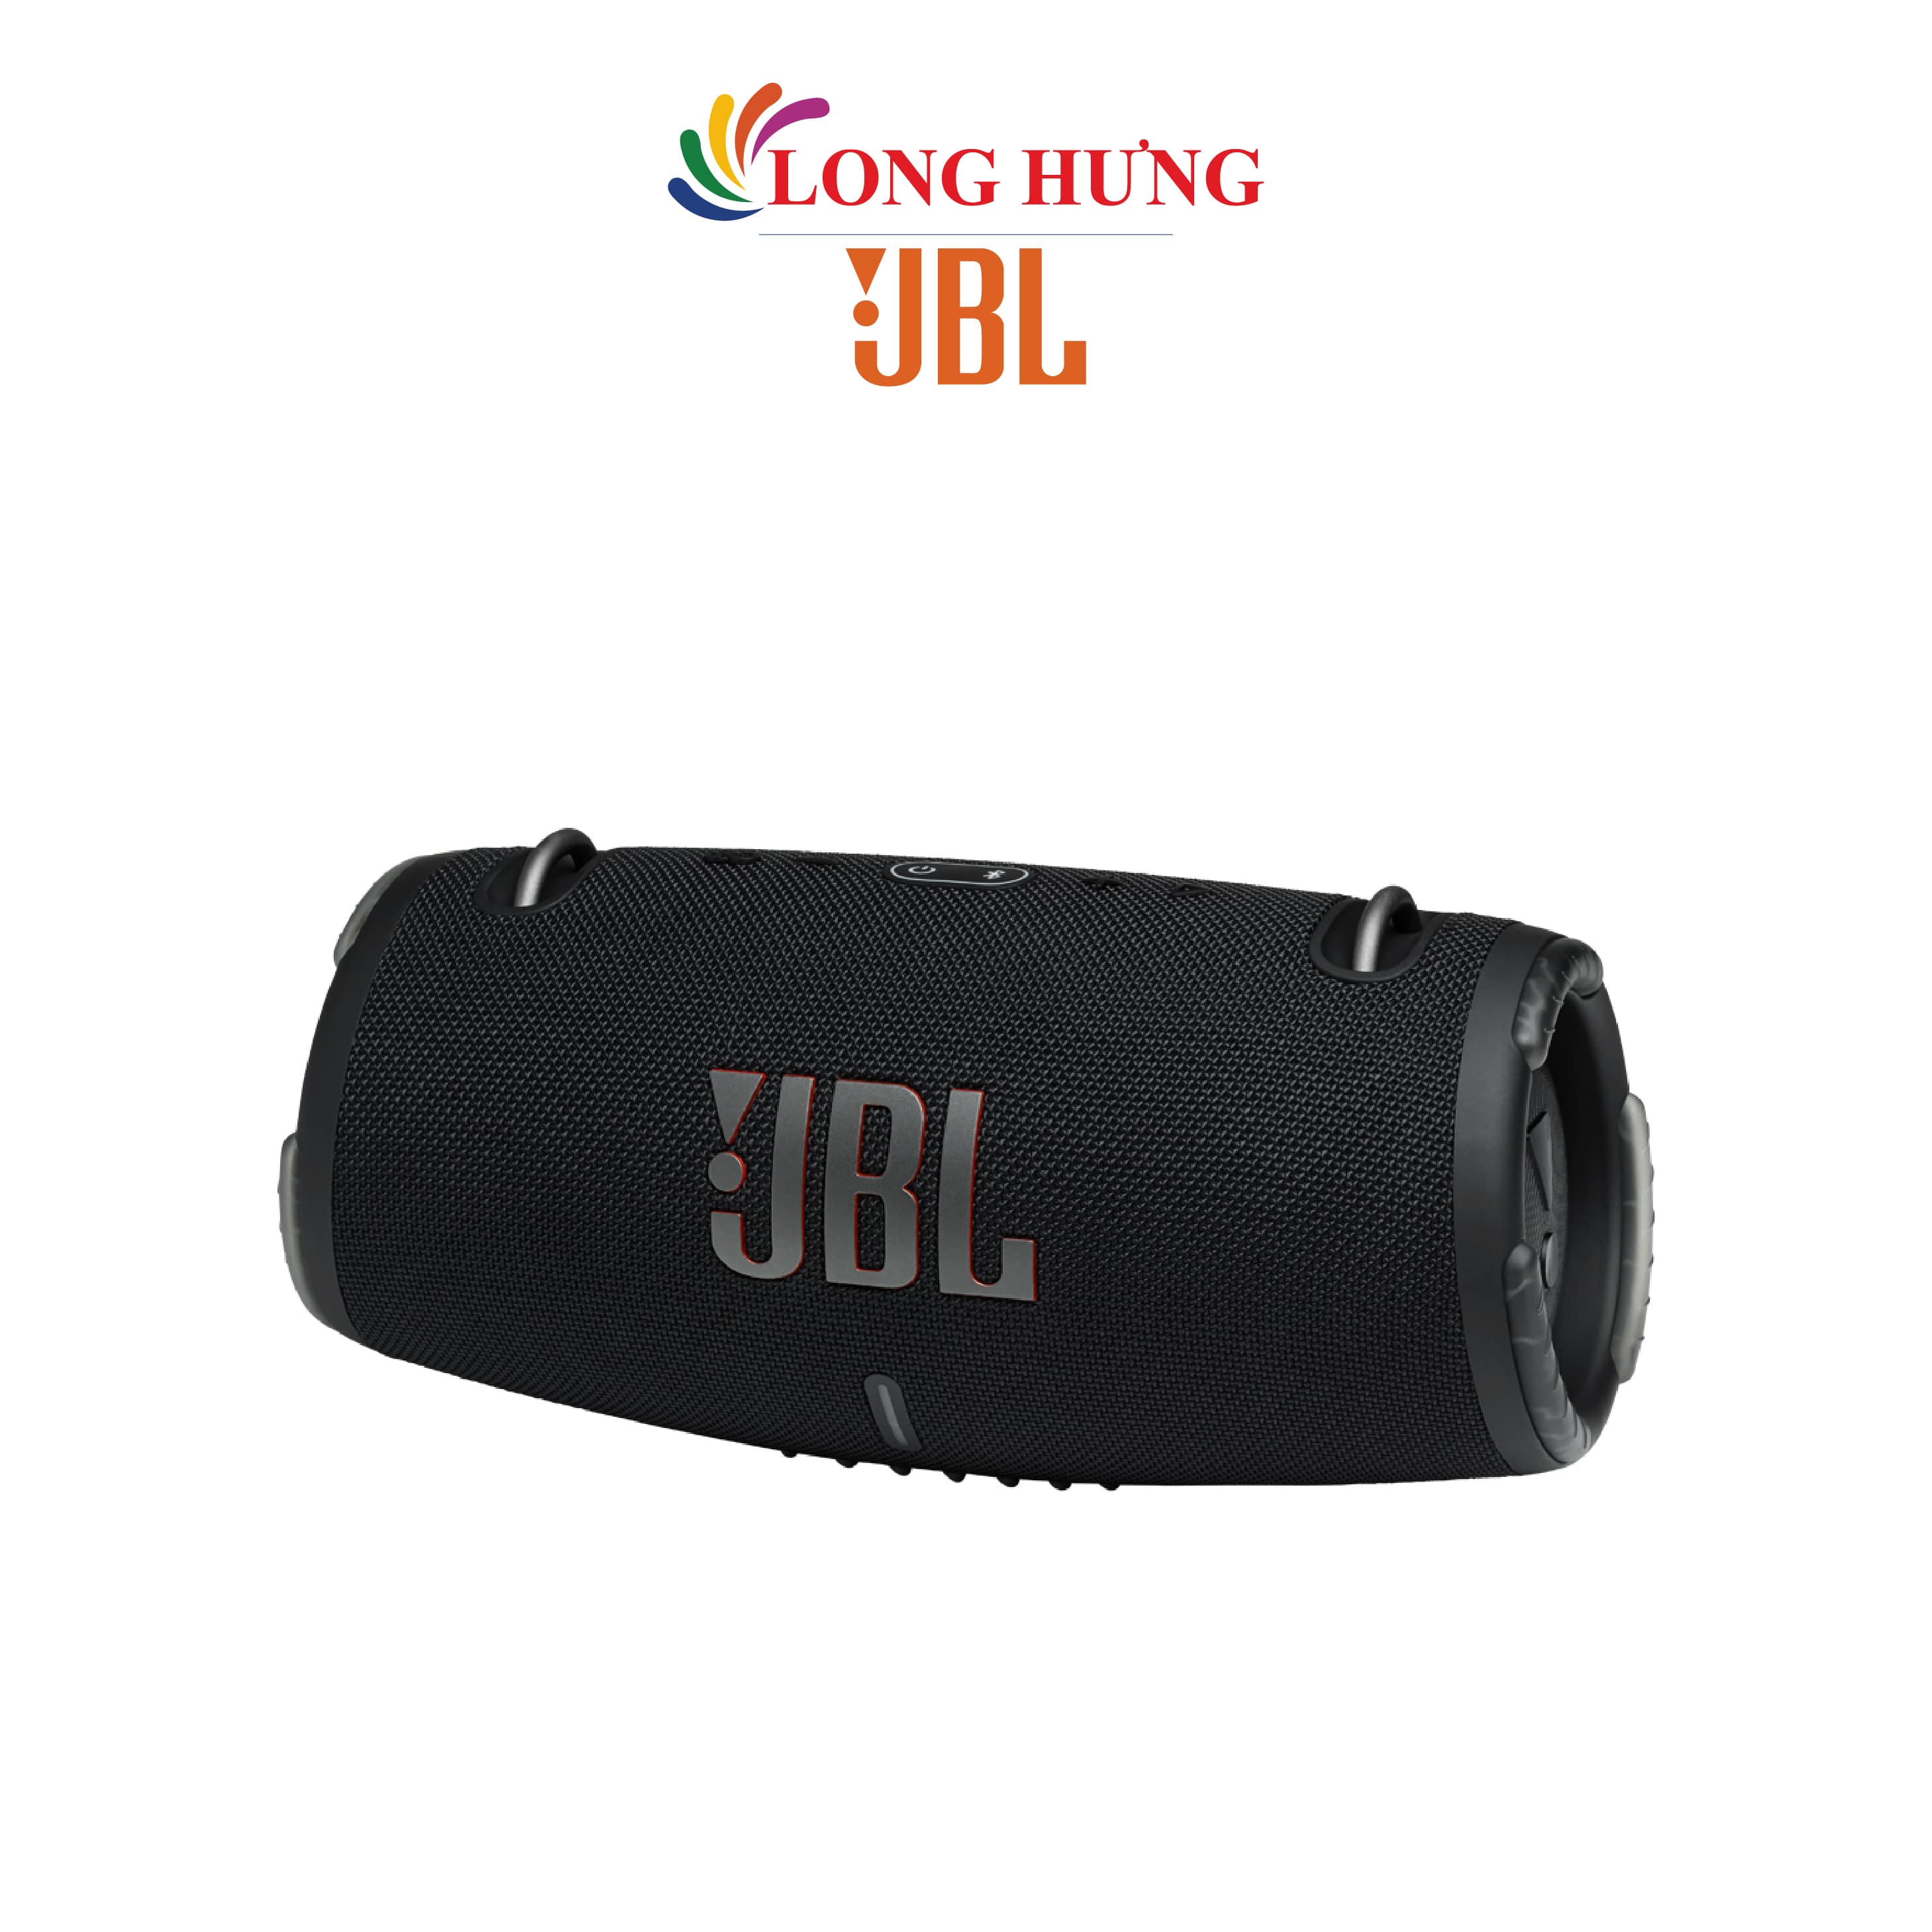 Loa Bluetooth JBL Xtreme 3 JBLXTREME3 - Hàng chính hãng